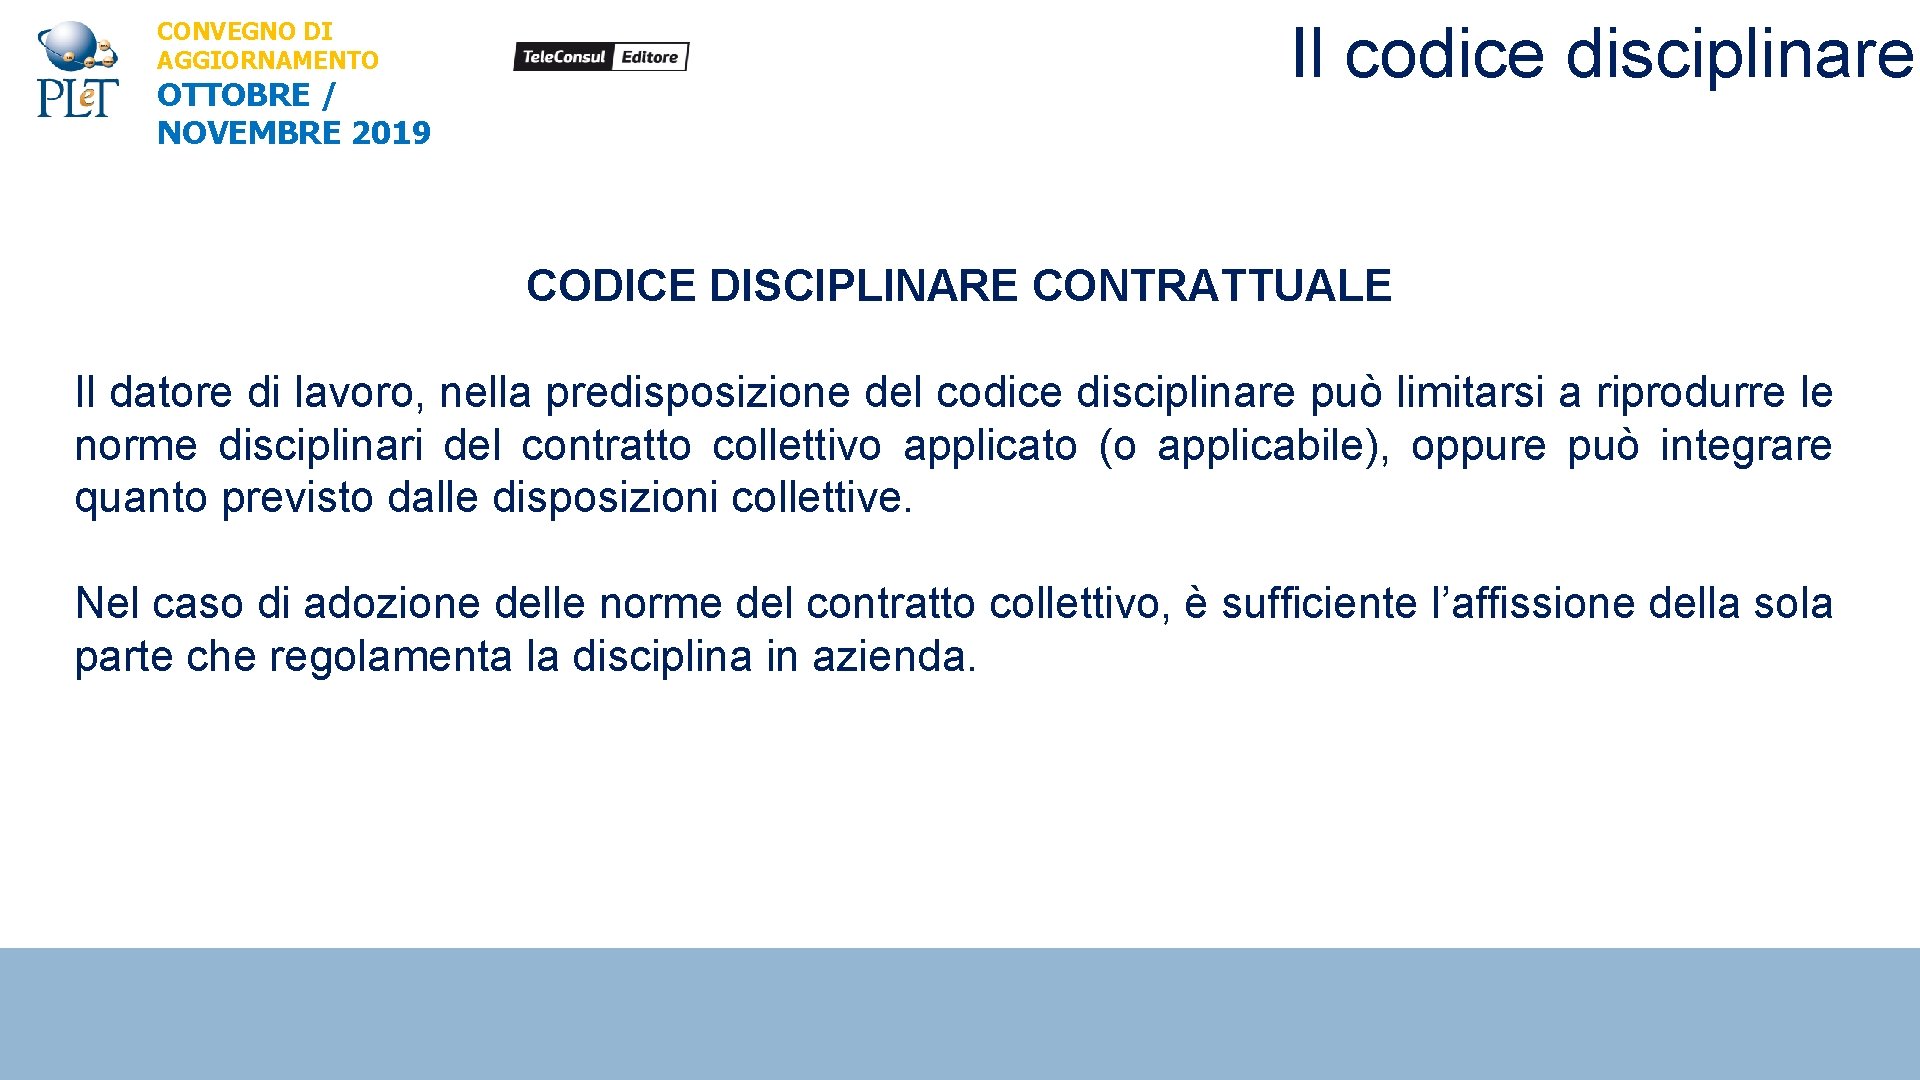 CONVEGNO DI AGGIORNAMENTO OTTOBRE / NOVEMBRE 2019 Il codice disciplinare CODICE DISCIPLINARE CONTRATTUALE Il